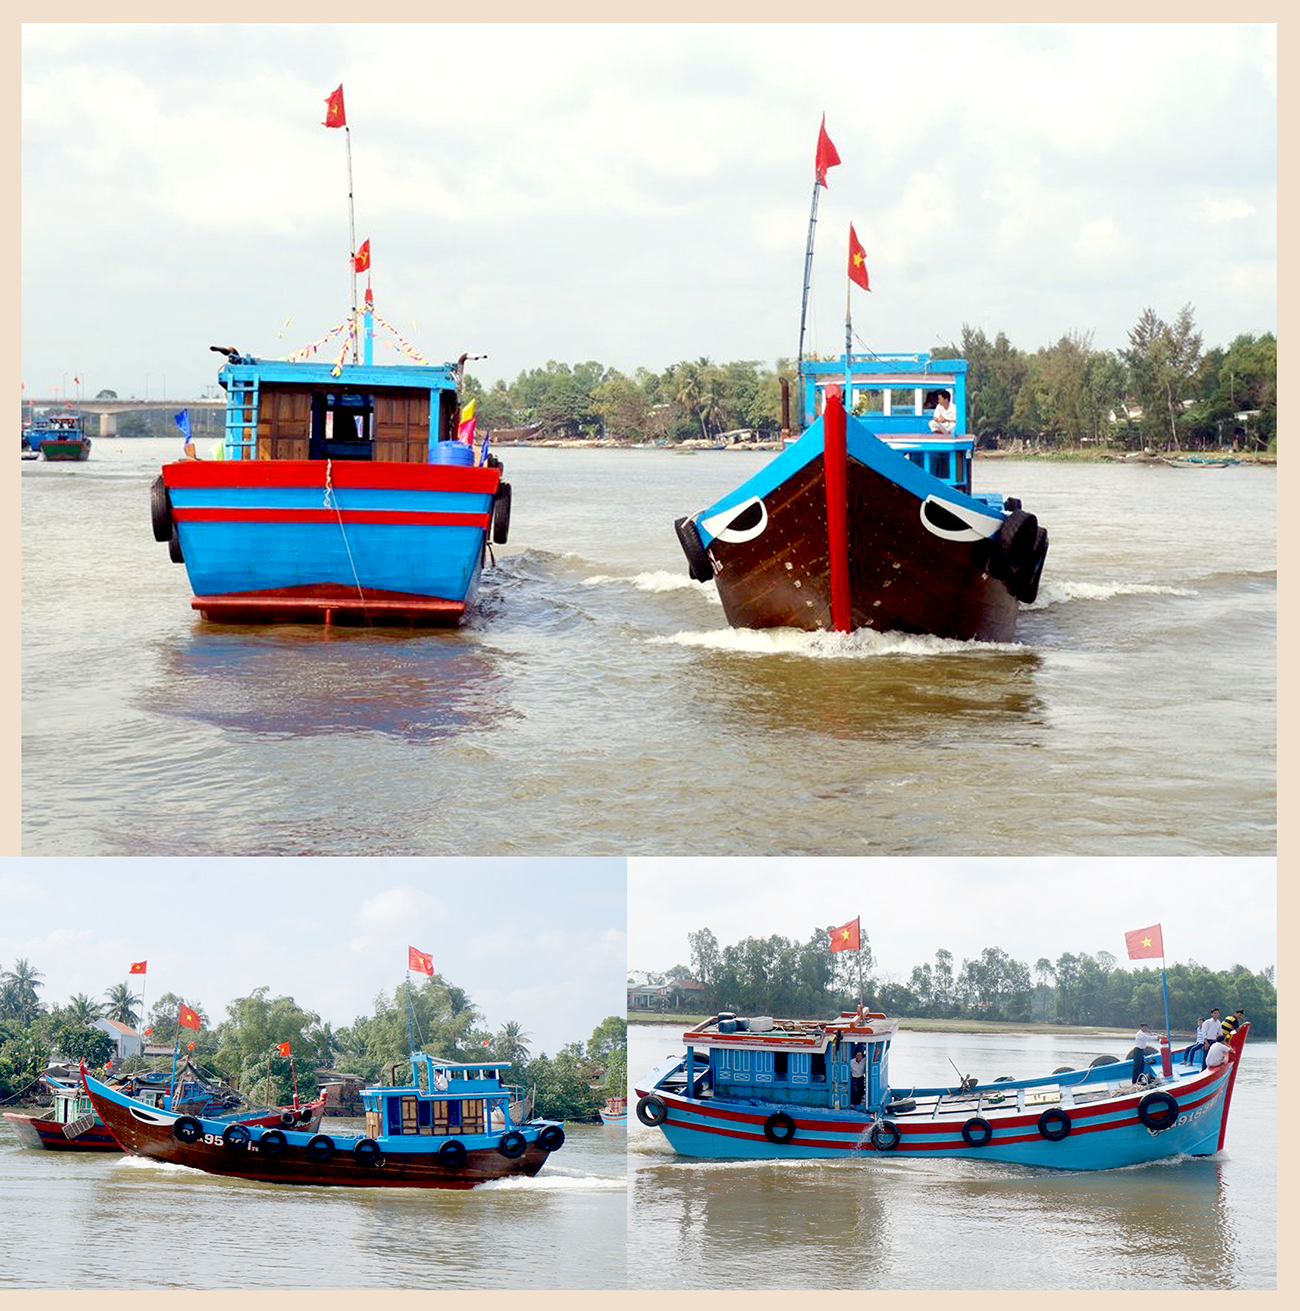 Sau lễ cúng Dinh bà, các tàu thuyền đều thực hiện nghi thức nổ máy chạy trên sông nhằm cầu mong cho một năm đánh bắt hải sản thuận lợi.